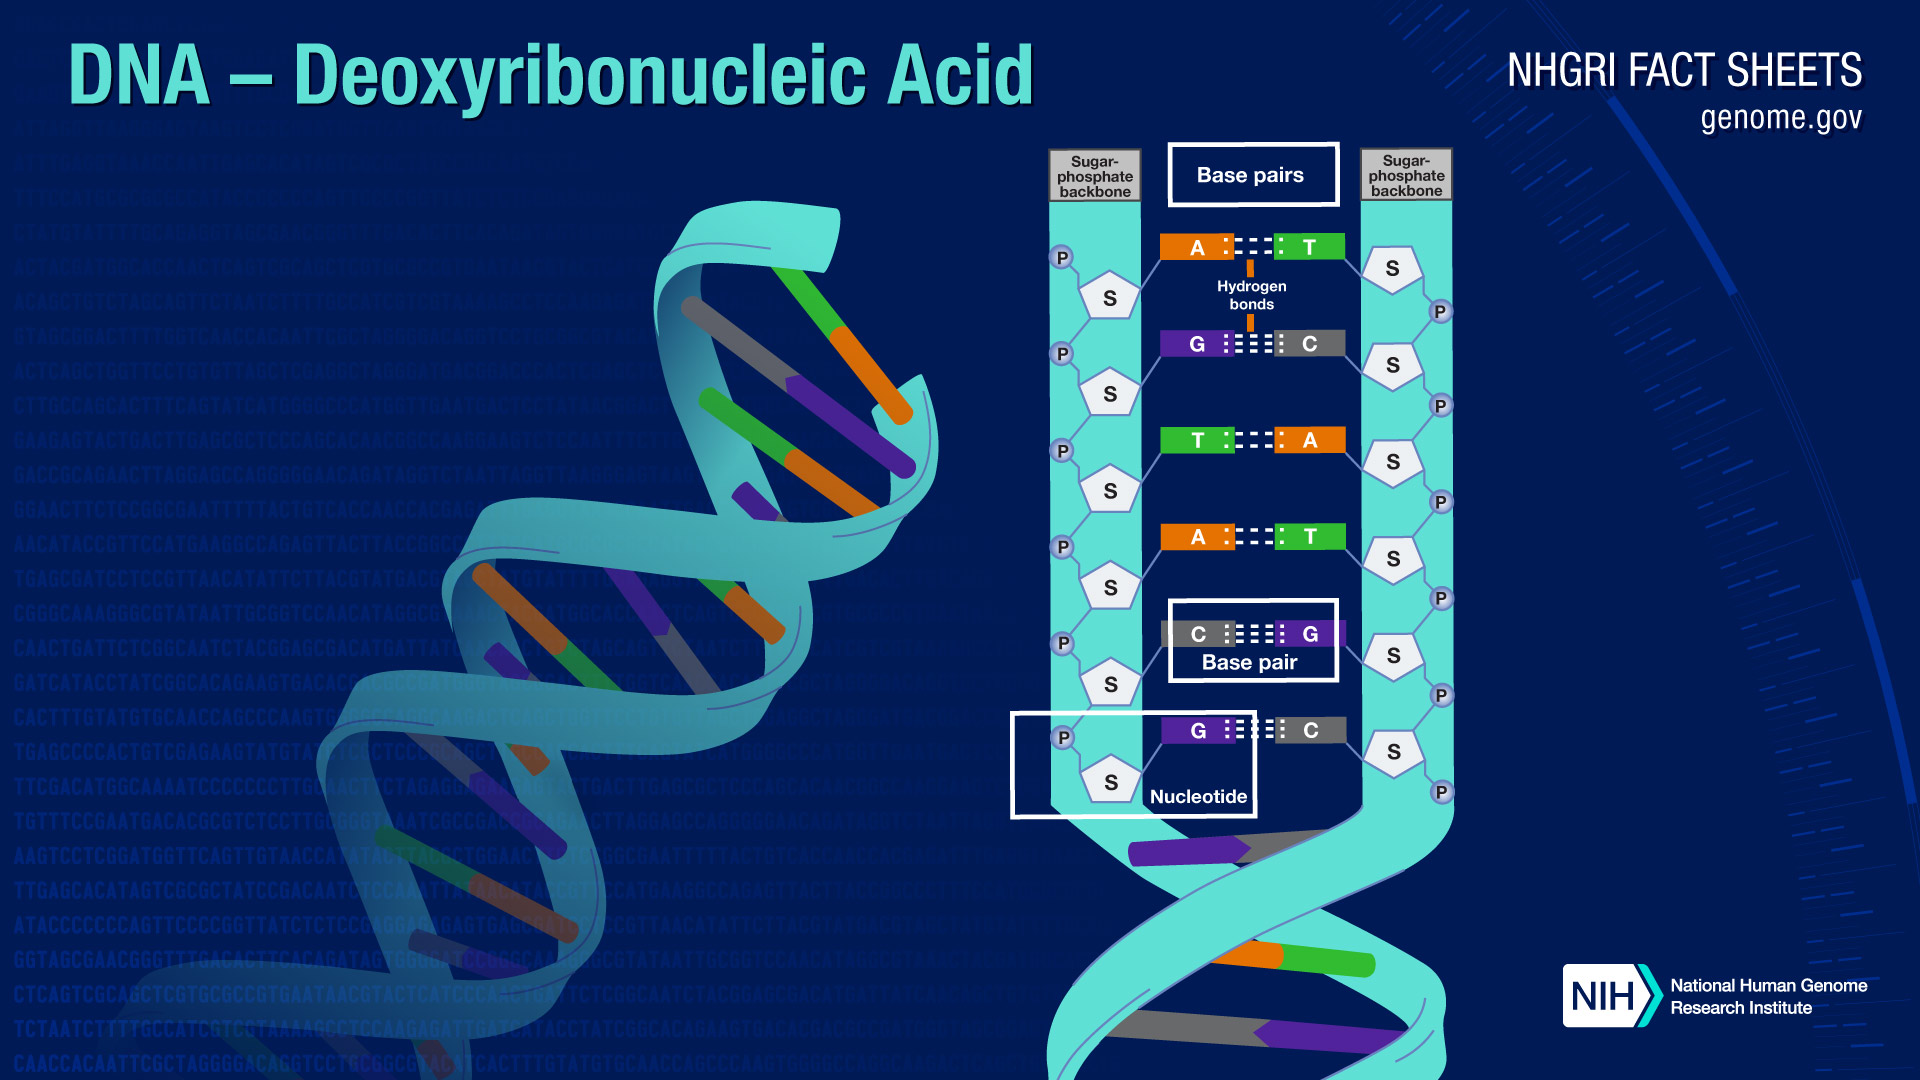 Deoxyribonucleic Acid (DNA) Fact Sheet